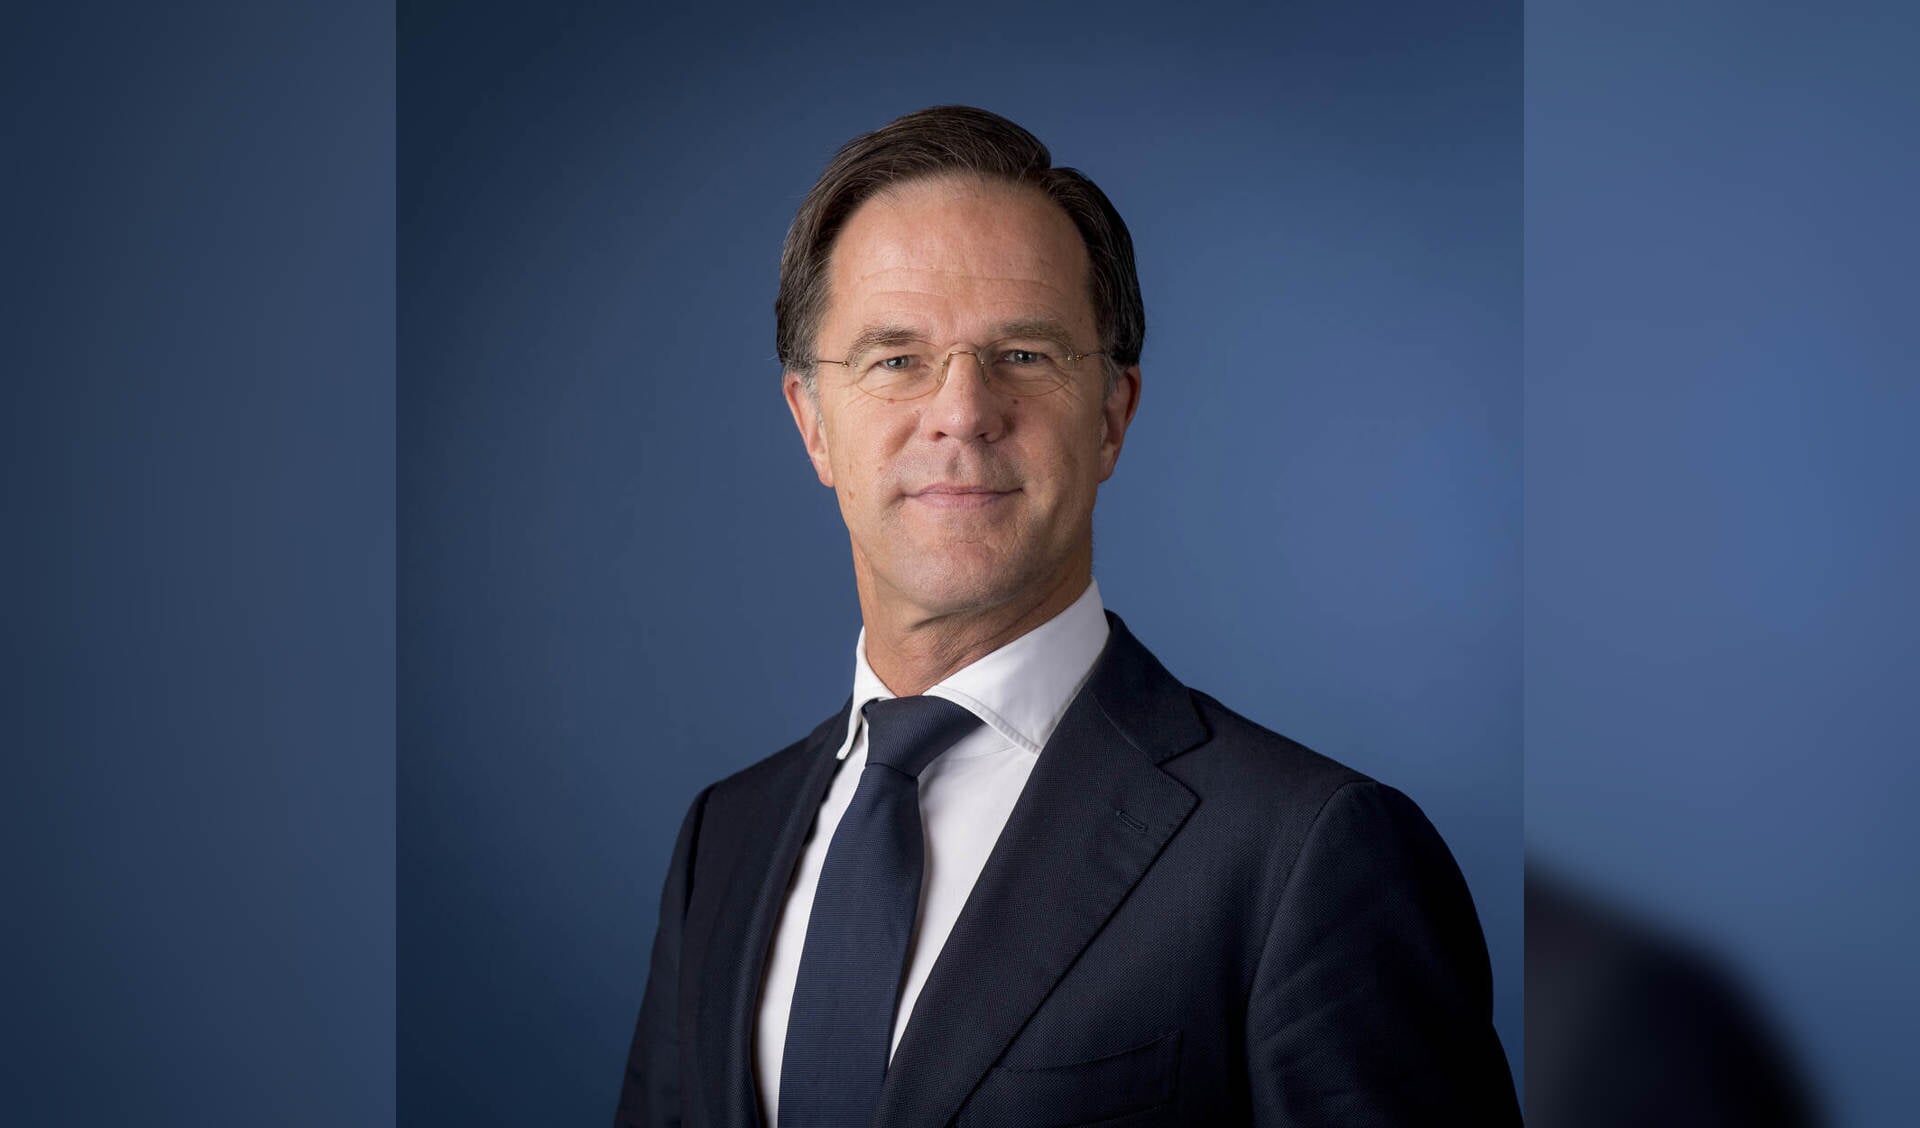 Mark Rutte, minister-president, minister van Algemene Zaken.

Beeld: ©RVD – Valerie Kuypers en Martijn Beekman